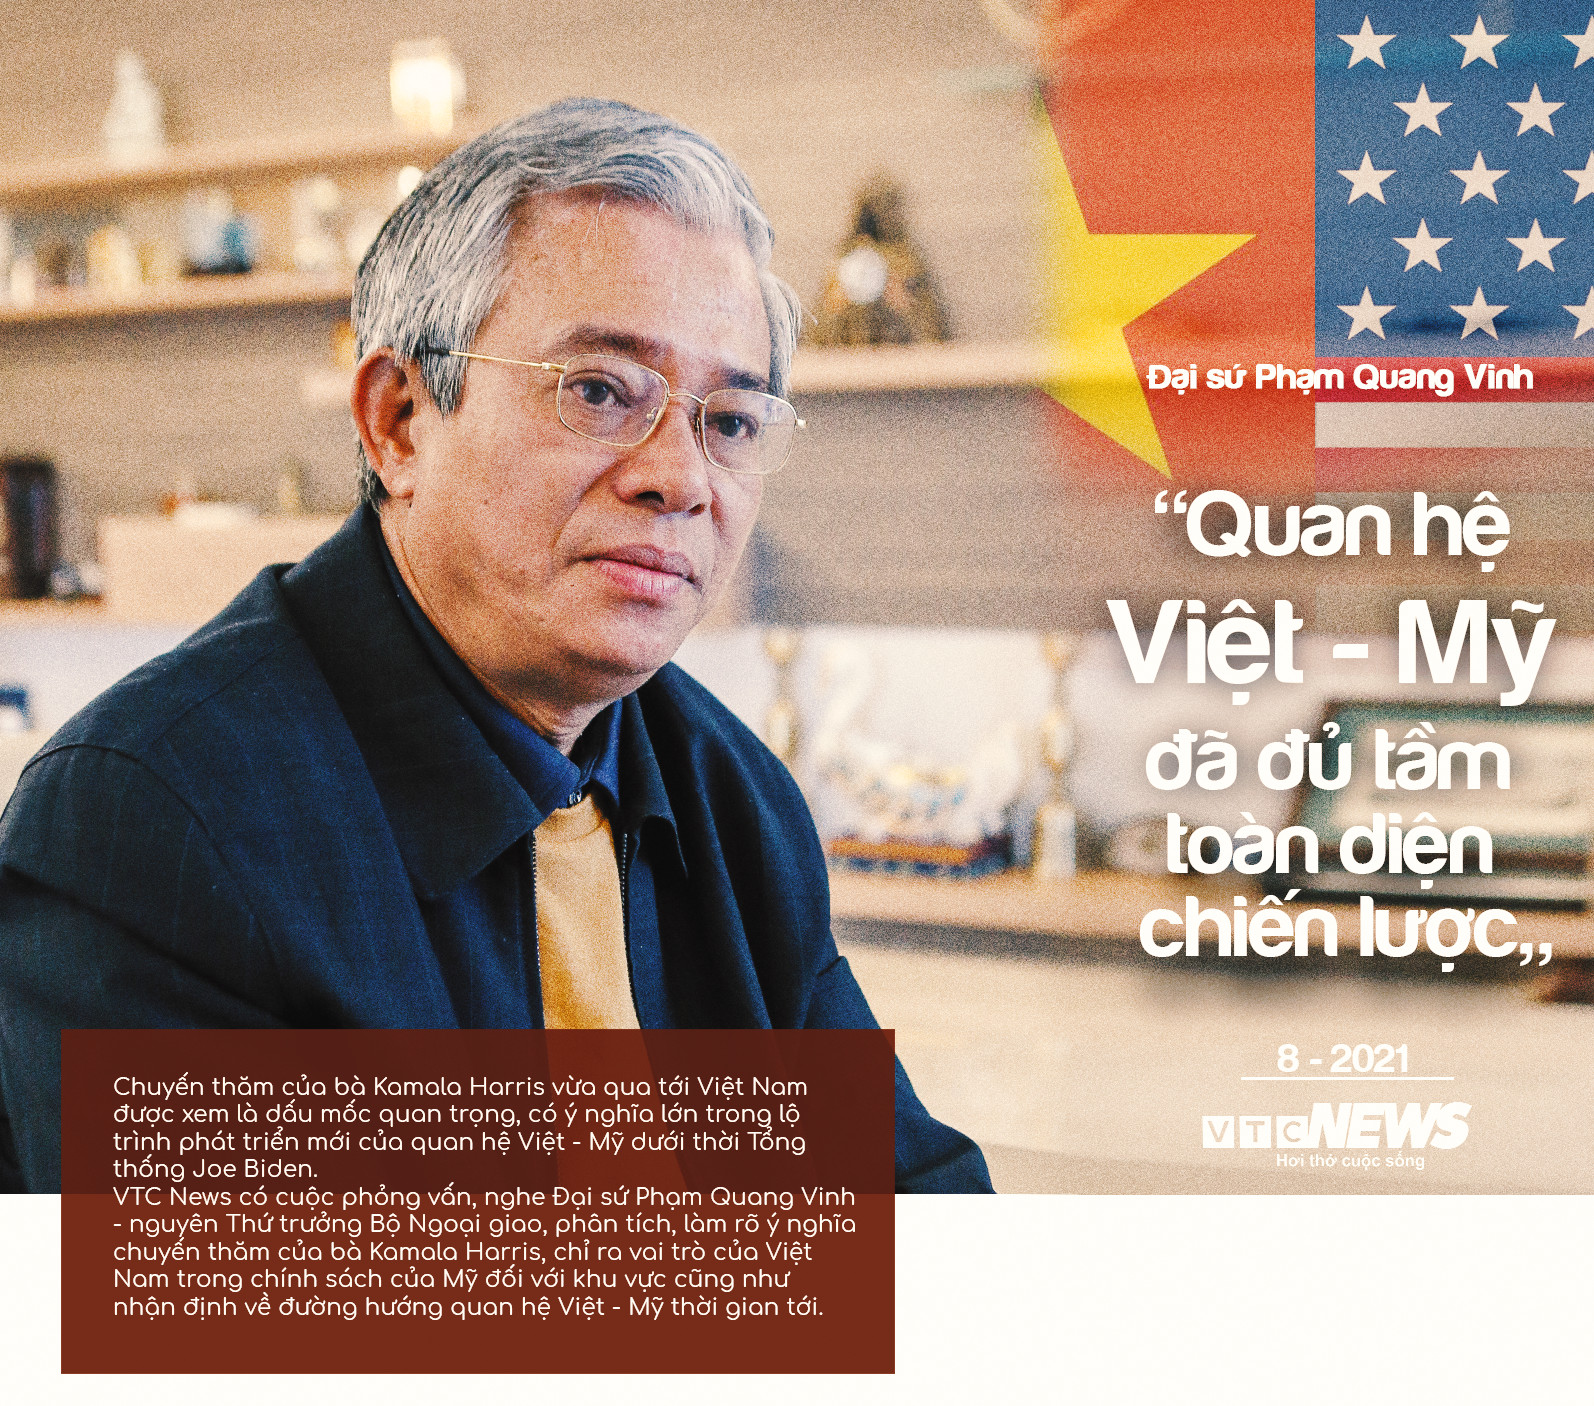 Đại sứ Phạm Quang Vinh: Quan hệ Việt - Mỹ đã đủ tầm toàn diện chiến lược - 1